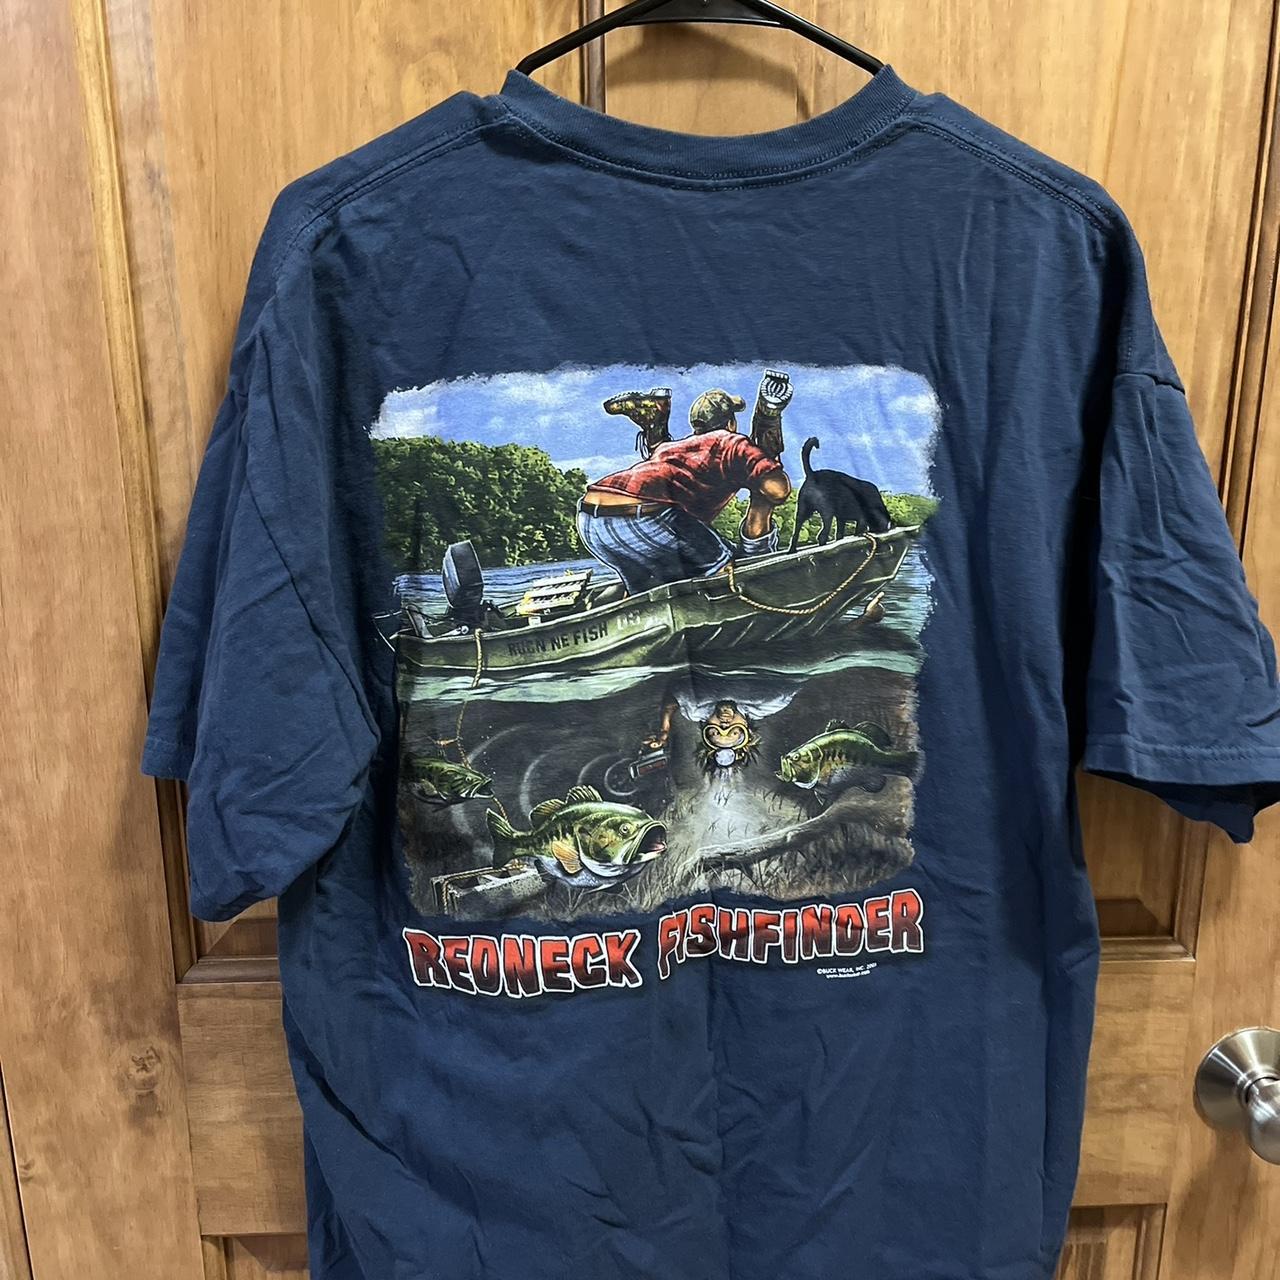 Redneck Fishfinder T Shirt XL #redneck #fish - Depop